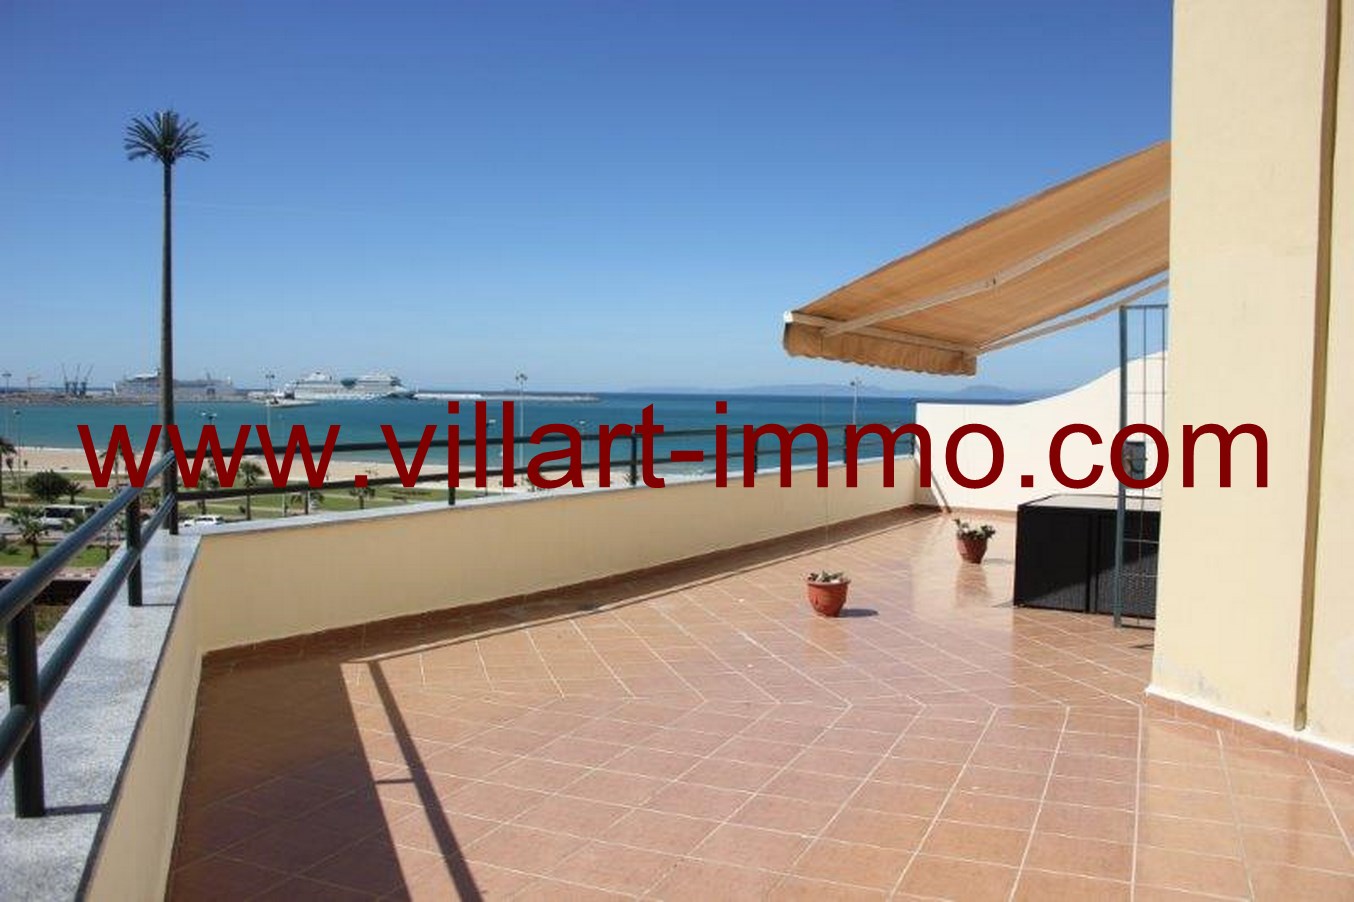 6-Location-Appartement-meublé-Tanger-terrasse-L651-Villart-immo